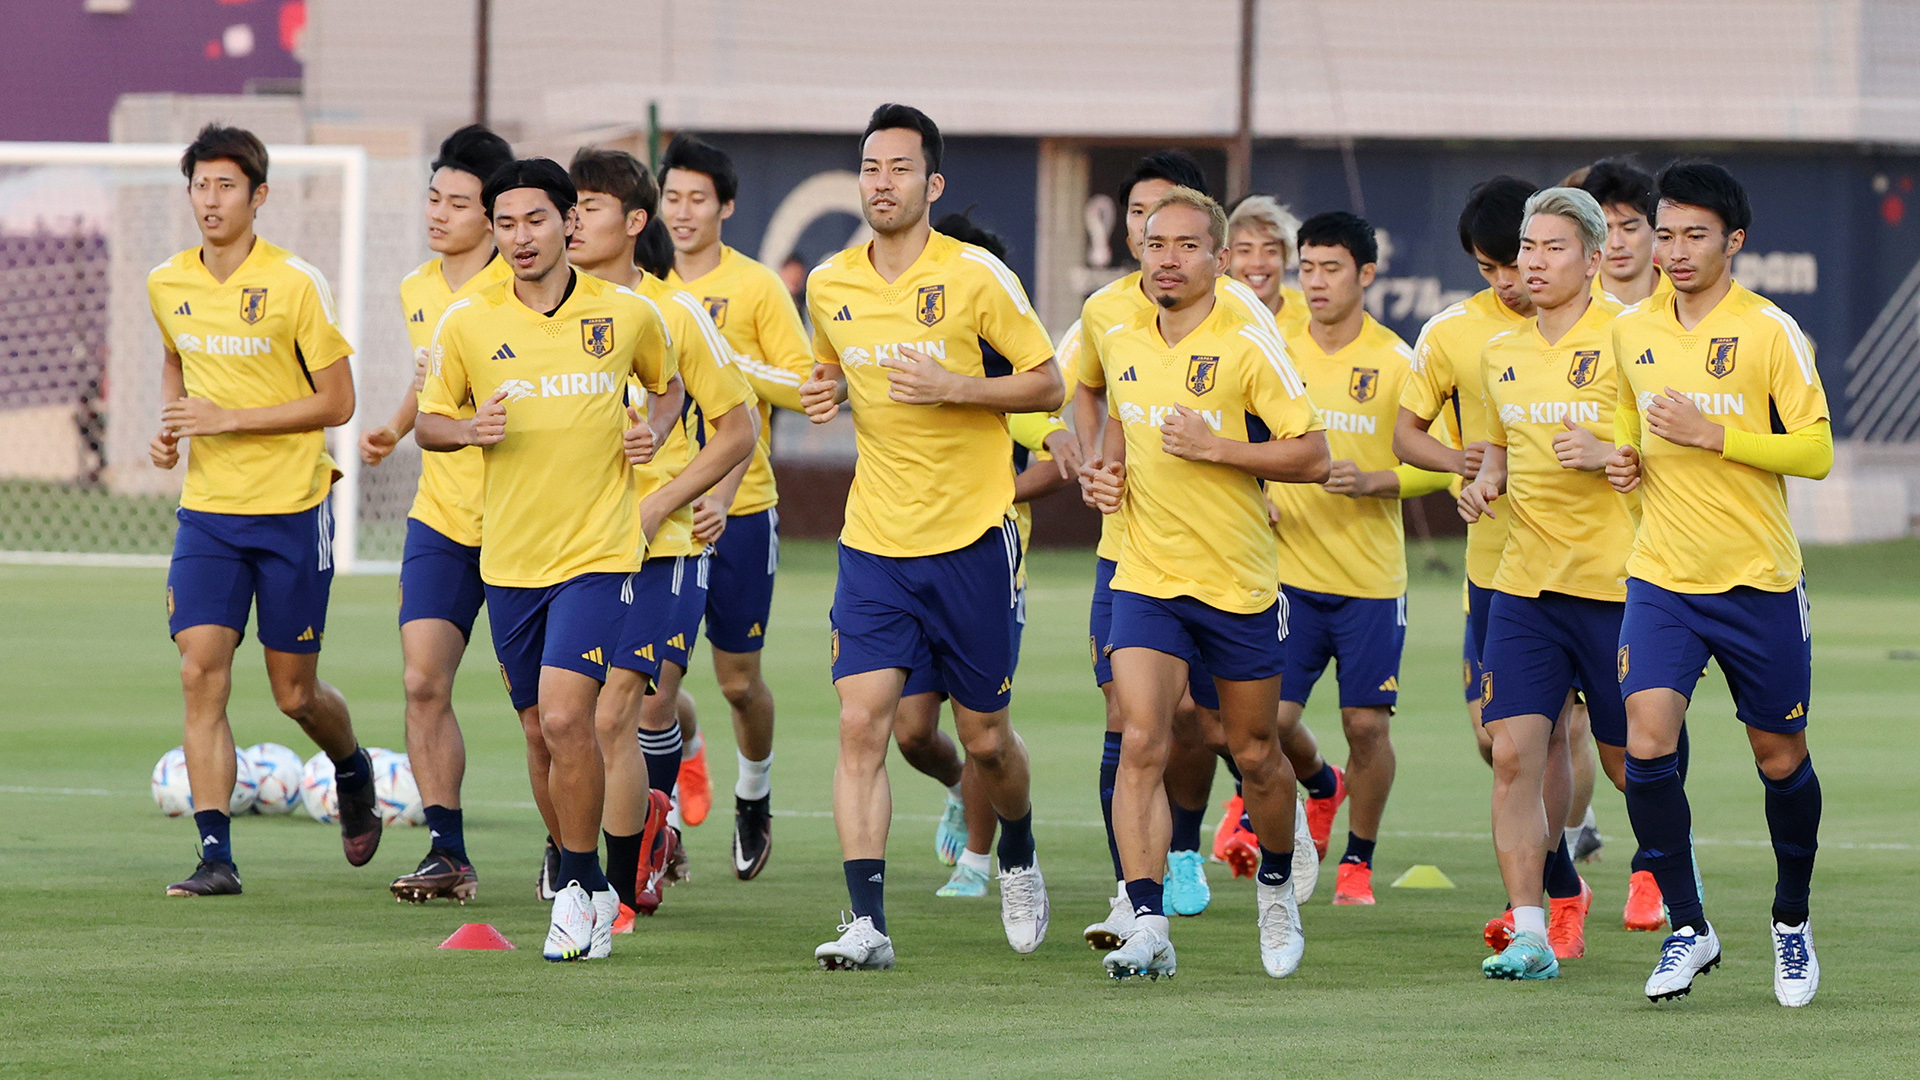 Spieler der japanischen Nationalmannschaft beim Training in Doha, Katar. | EPA